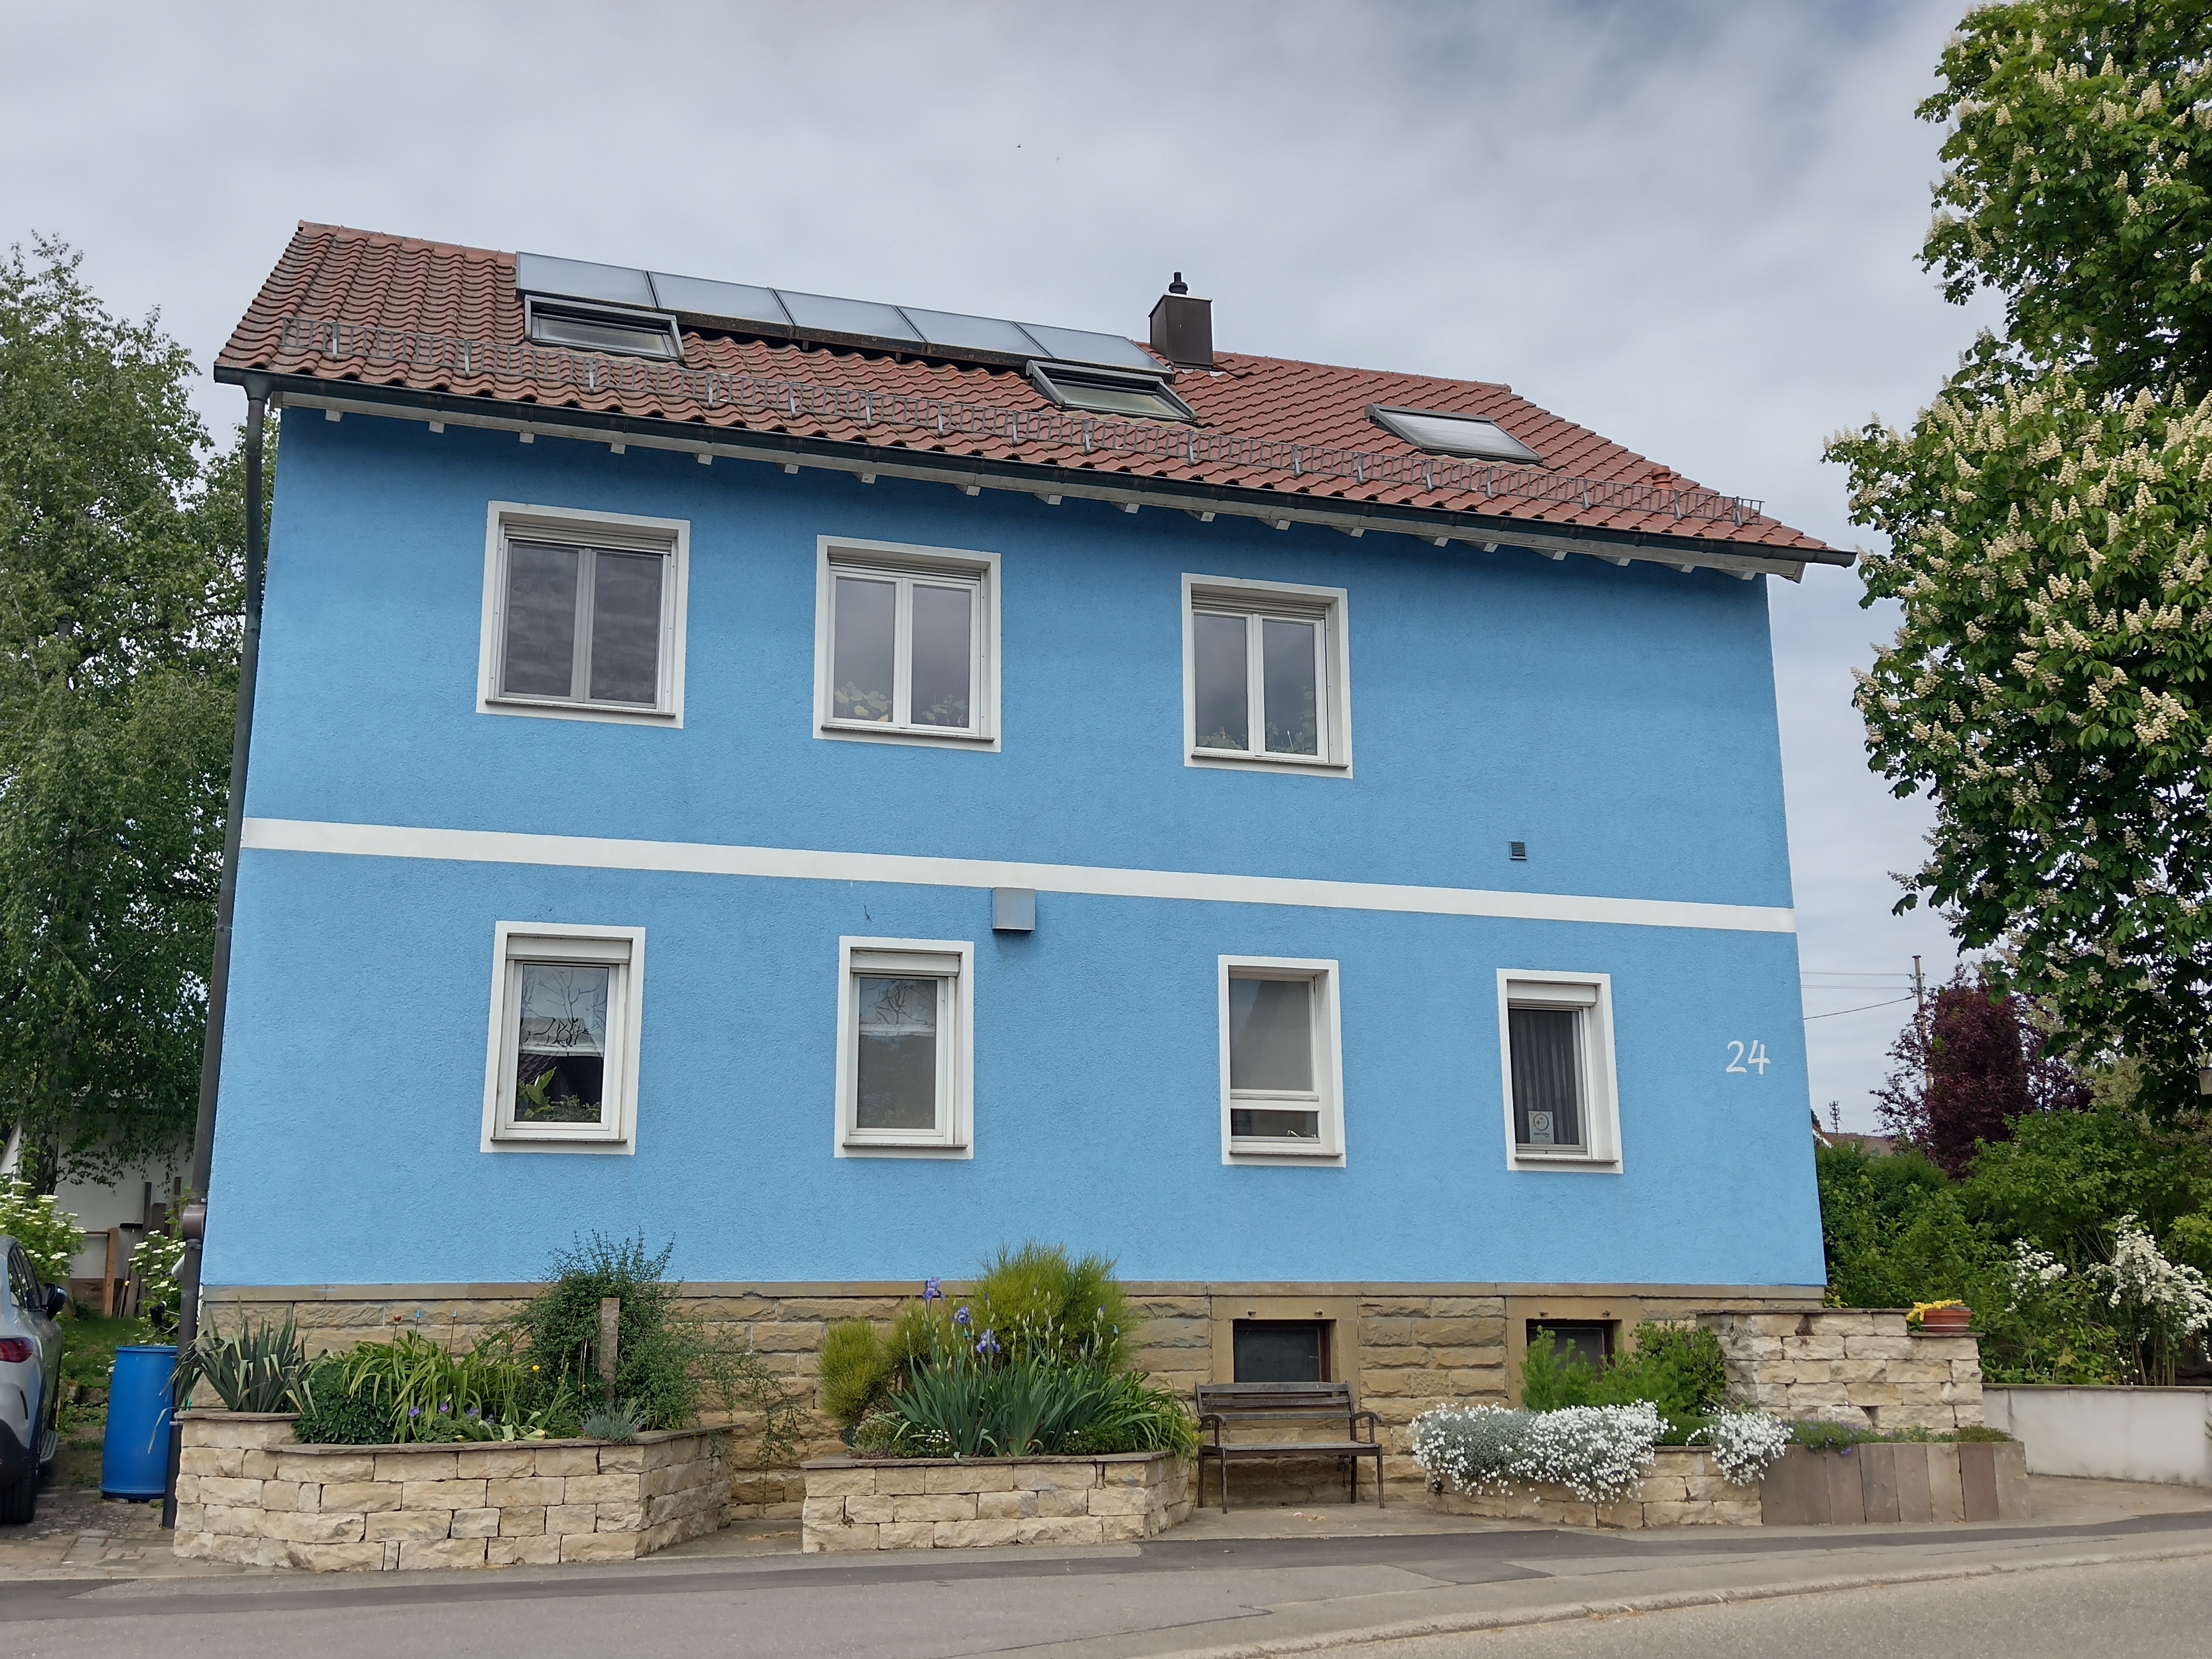 Foto des blauen Hauses neben einer großen Kastanie